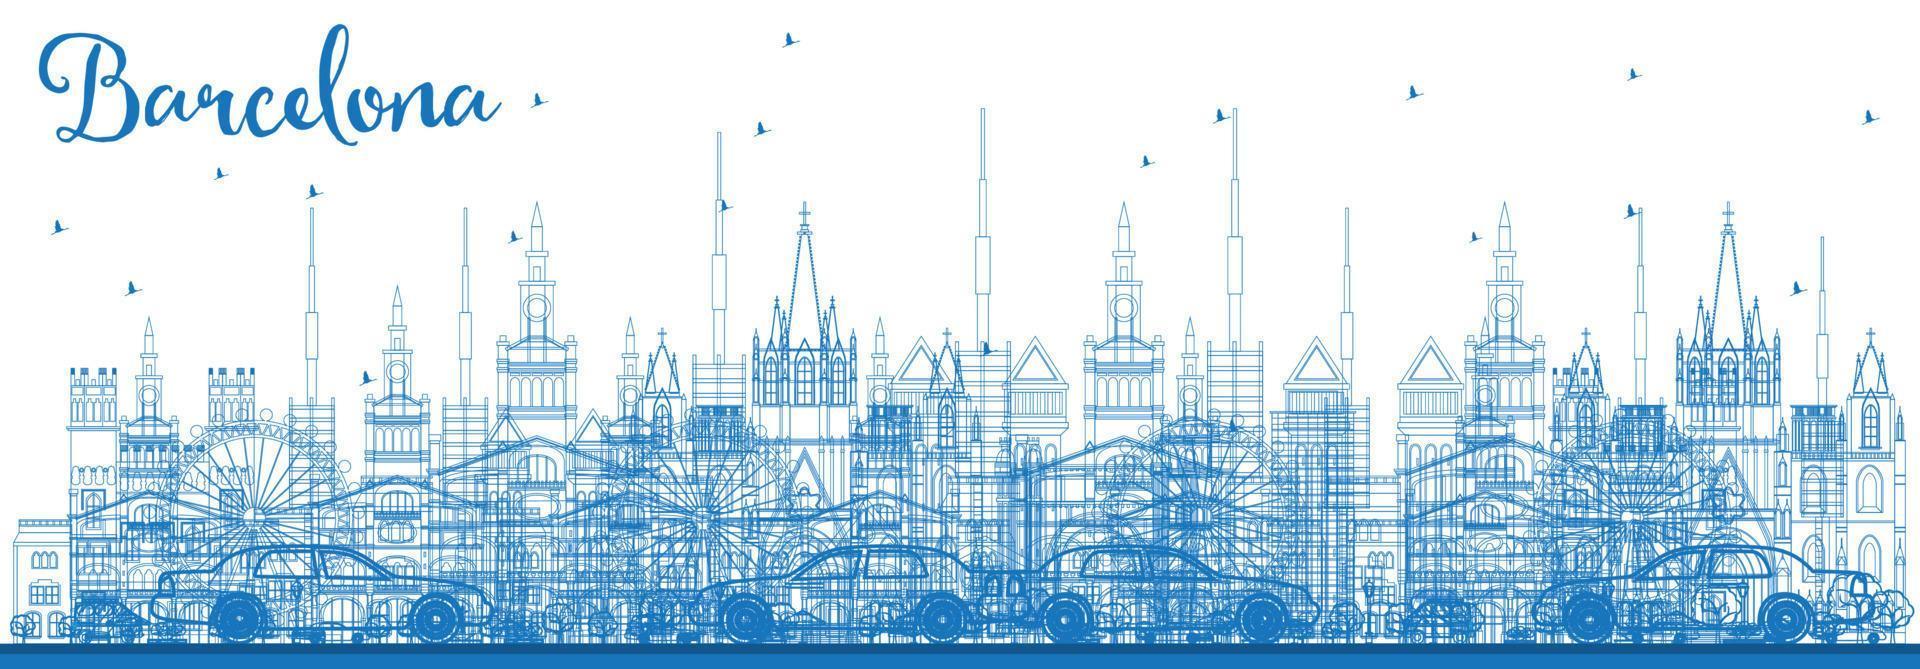 delinear el horizonte de barcelona con edificios azules. vector